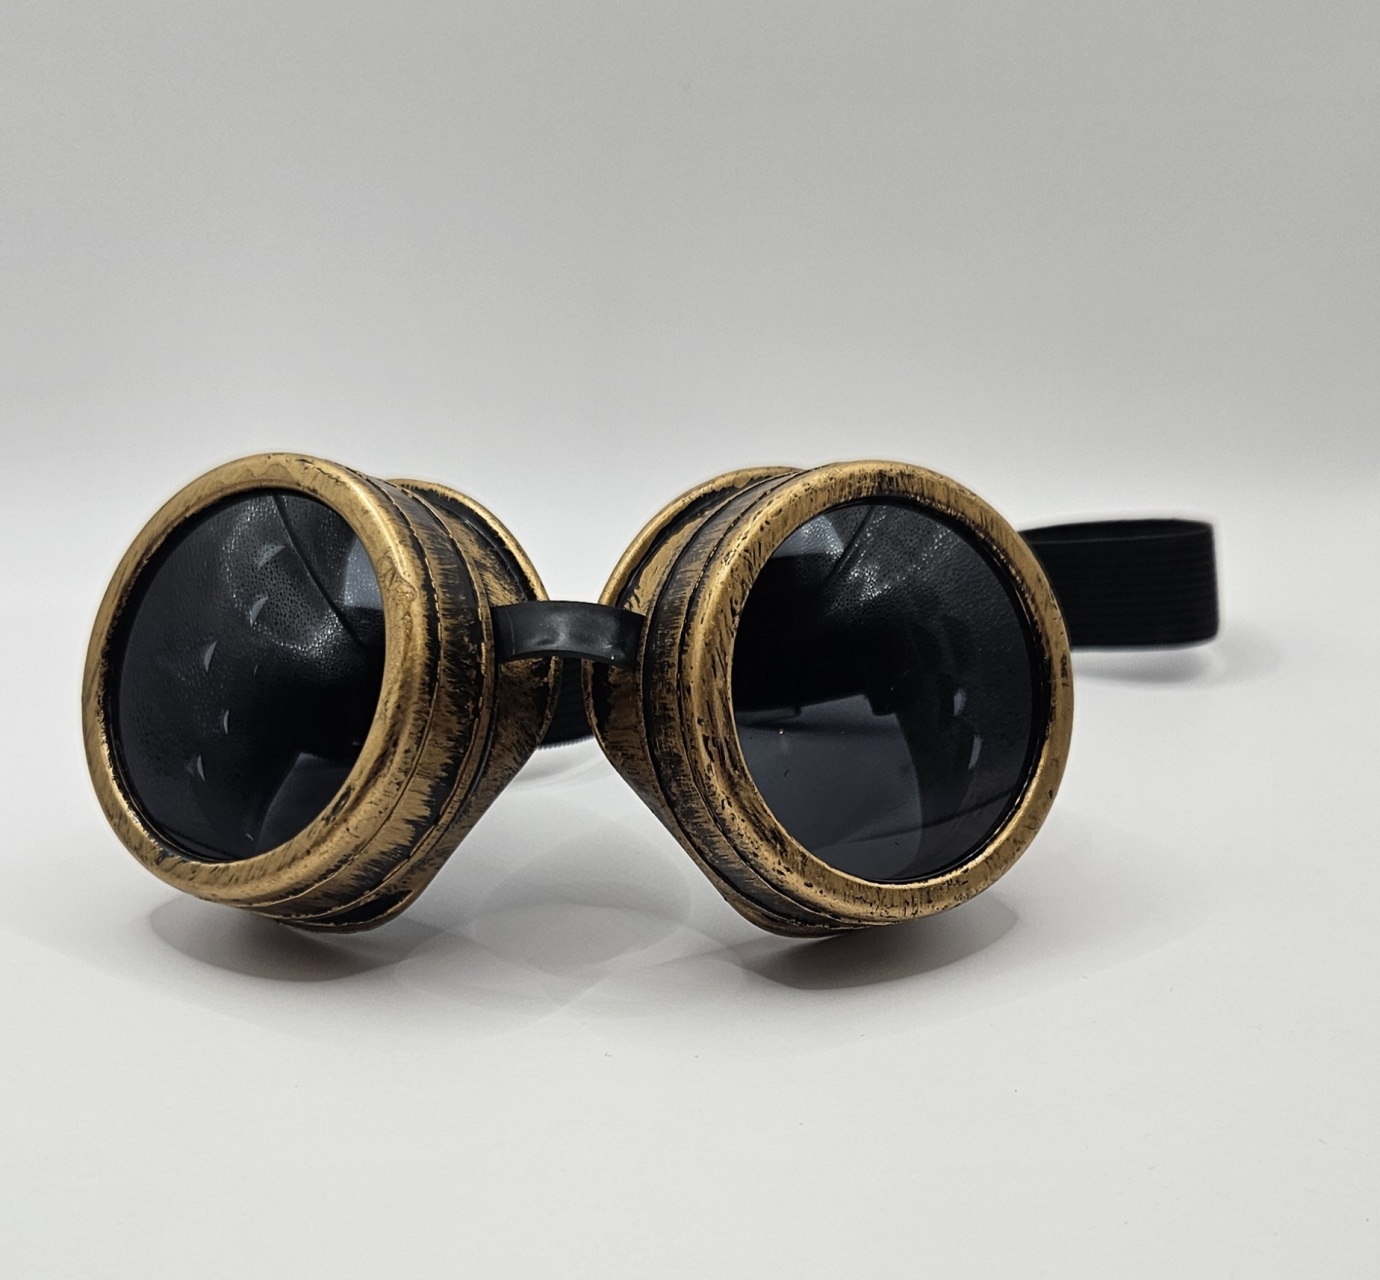 Exclusieve steampunk goggles in goud voor een luxe vintage look